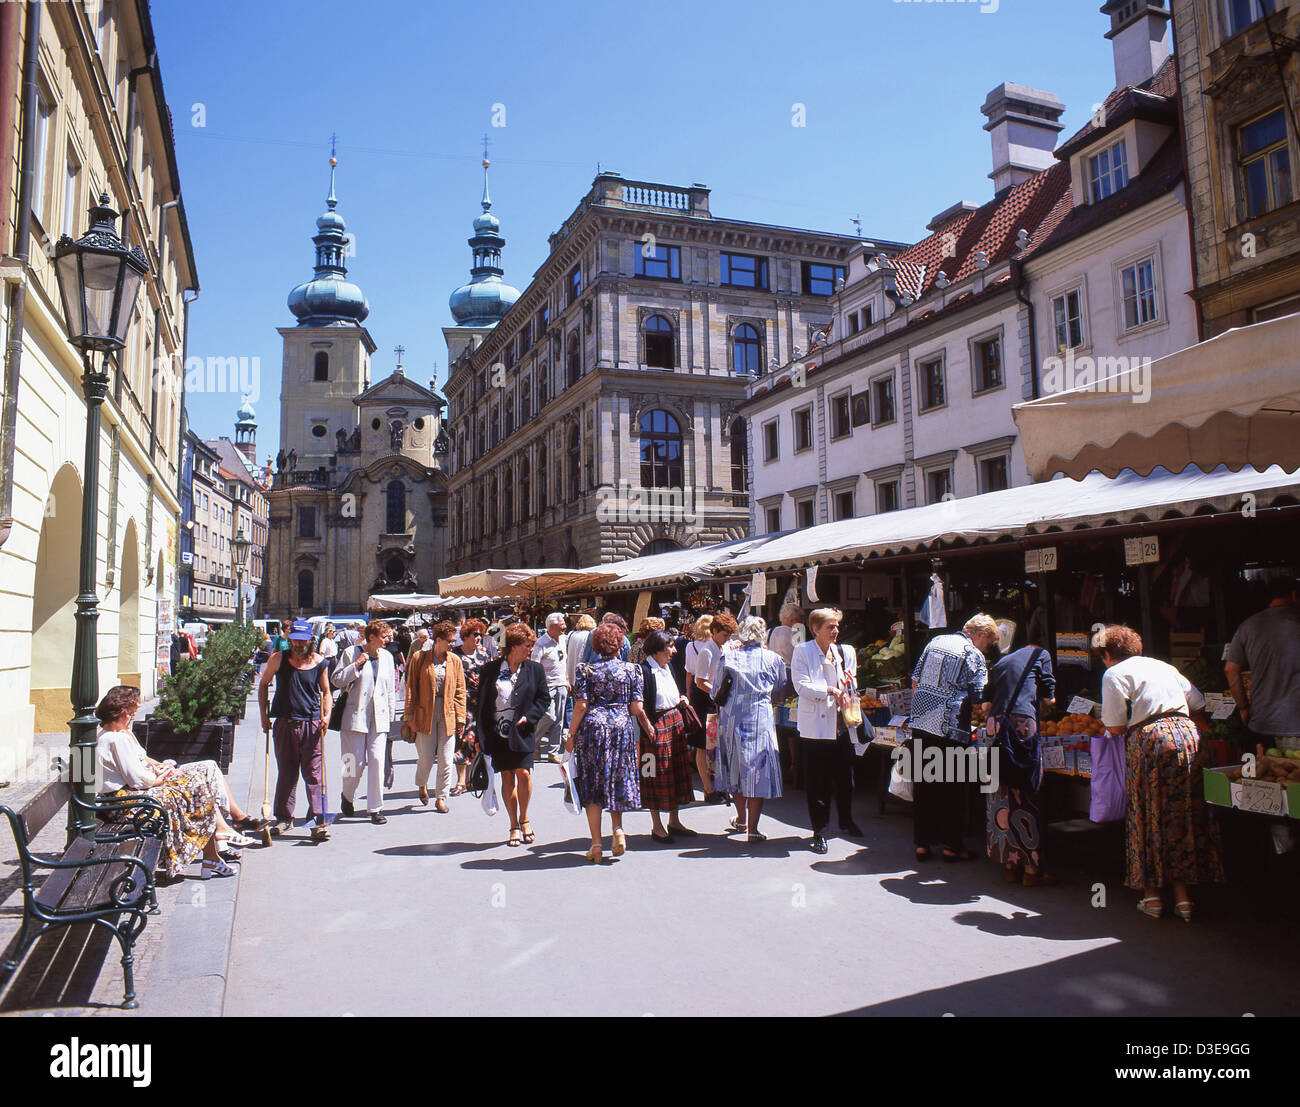 Mercato di strada nella città vecchia (Staré Město), Praga (Praha), Cechia Foto Stock